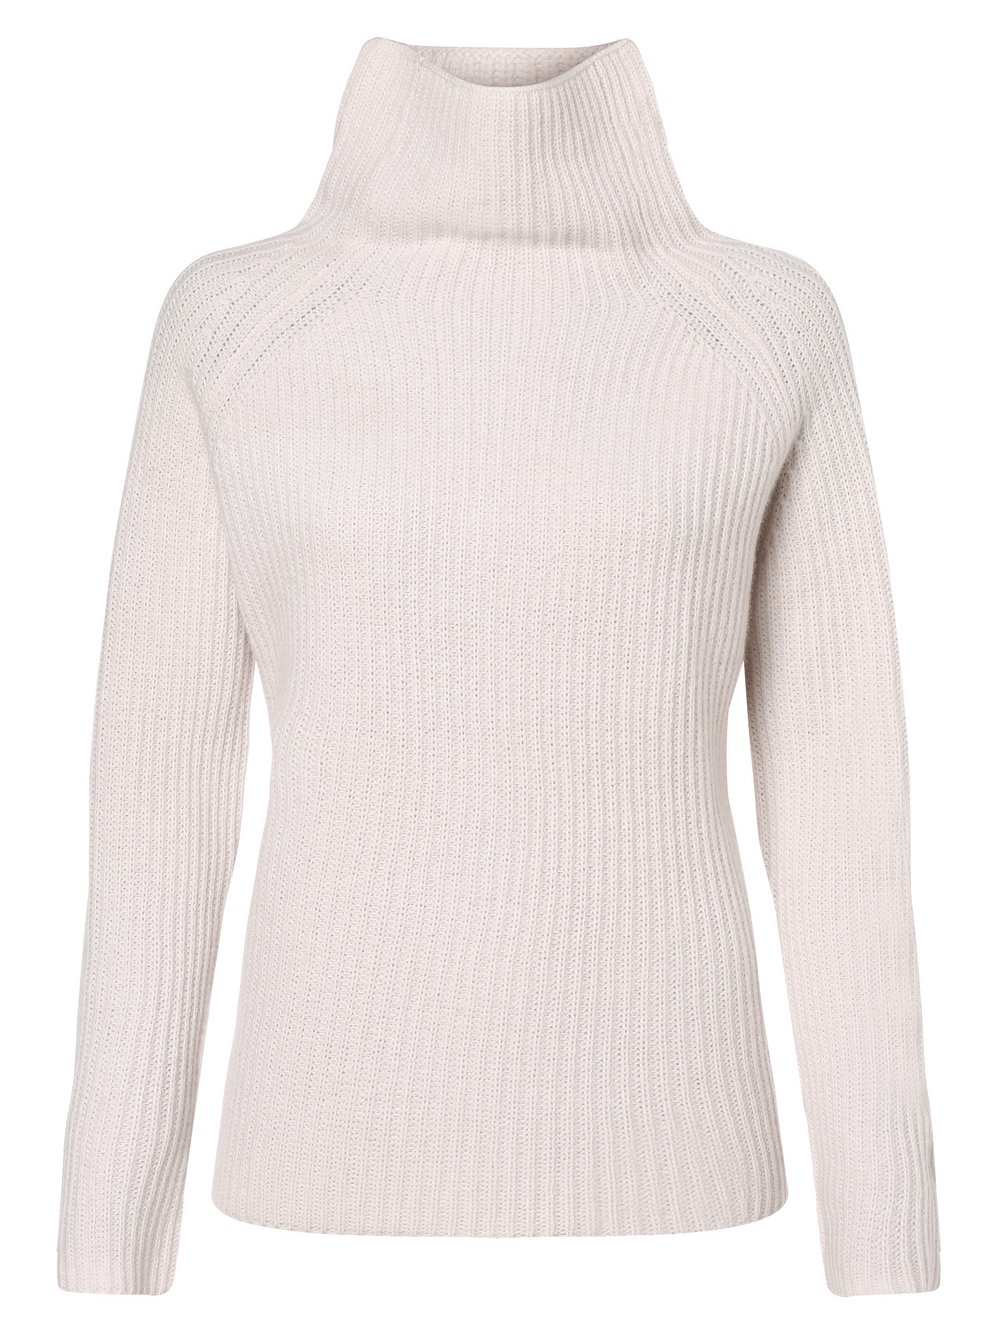 Marie Lund Damski sweter z wełny merino Kobiety Wełna beżowy jednolity, XS